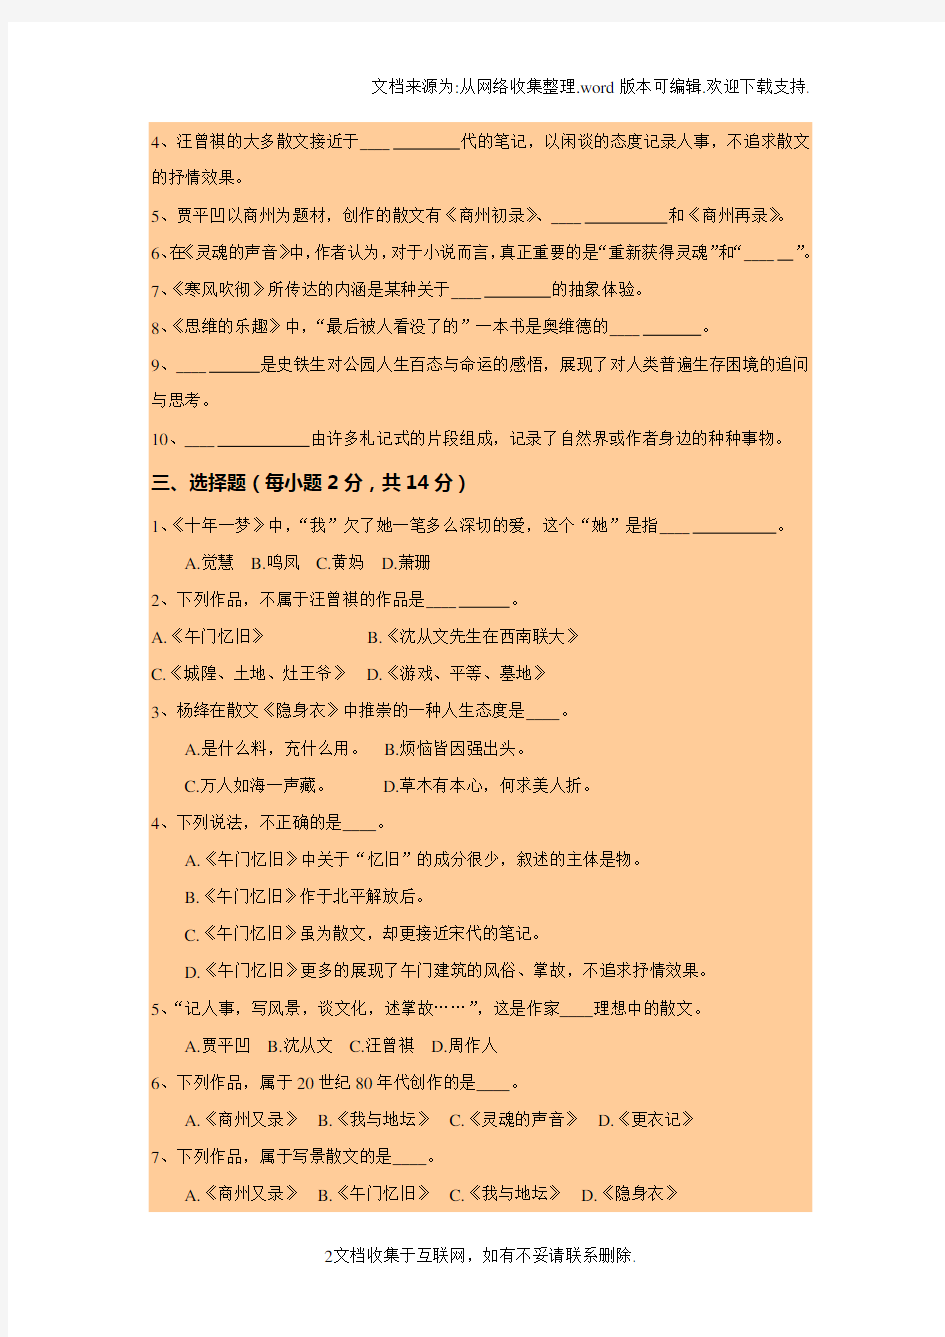 中国现当代文学名著导读(2)